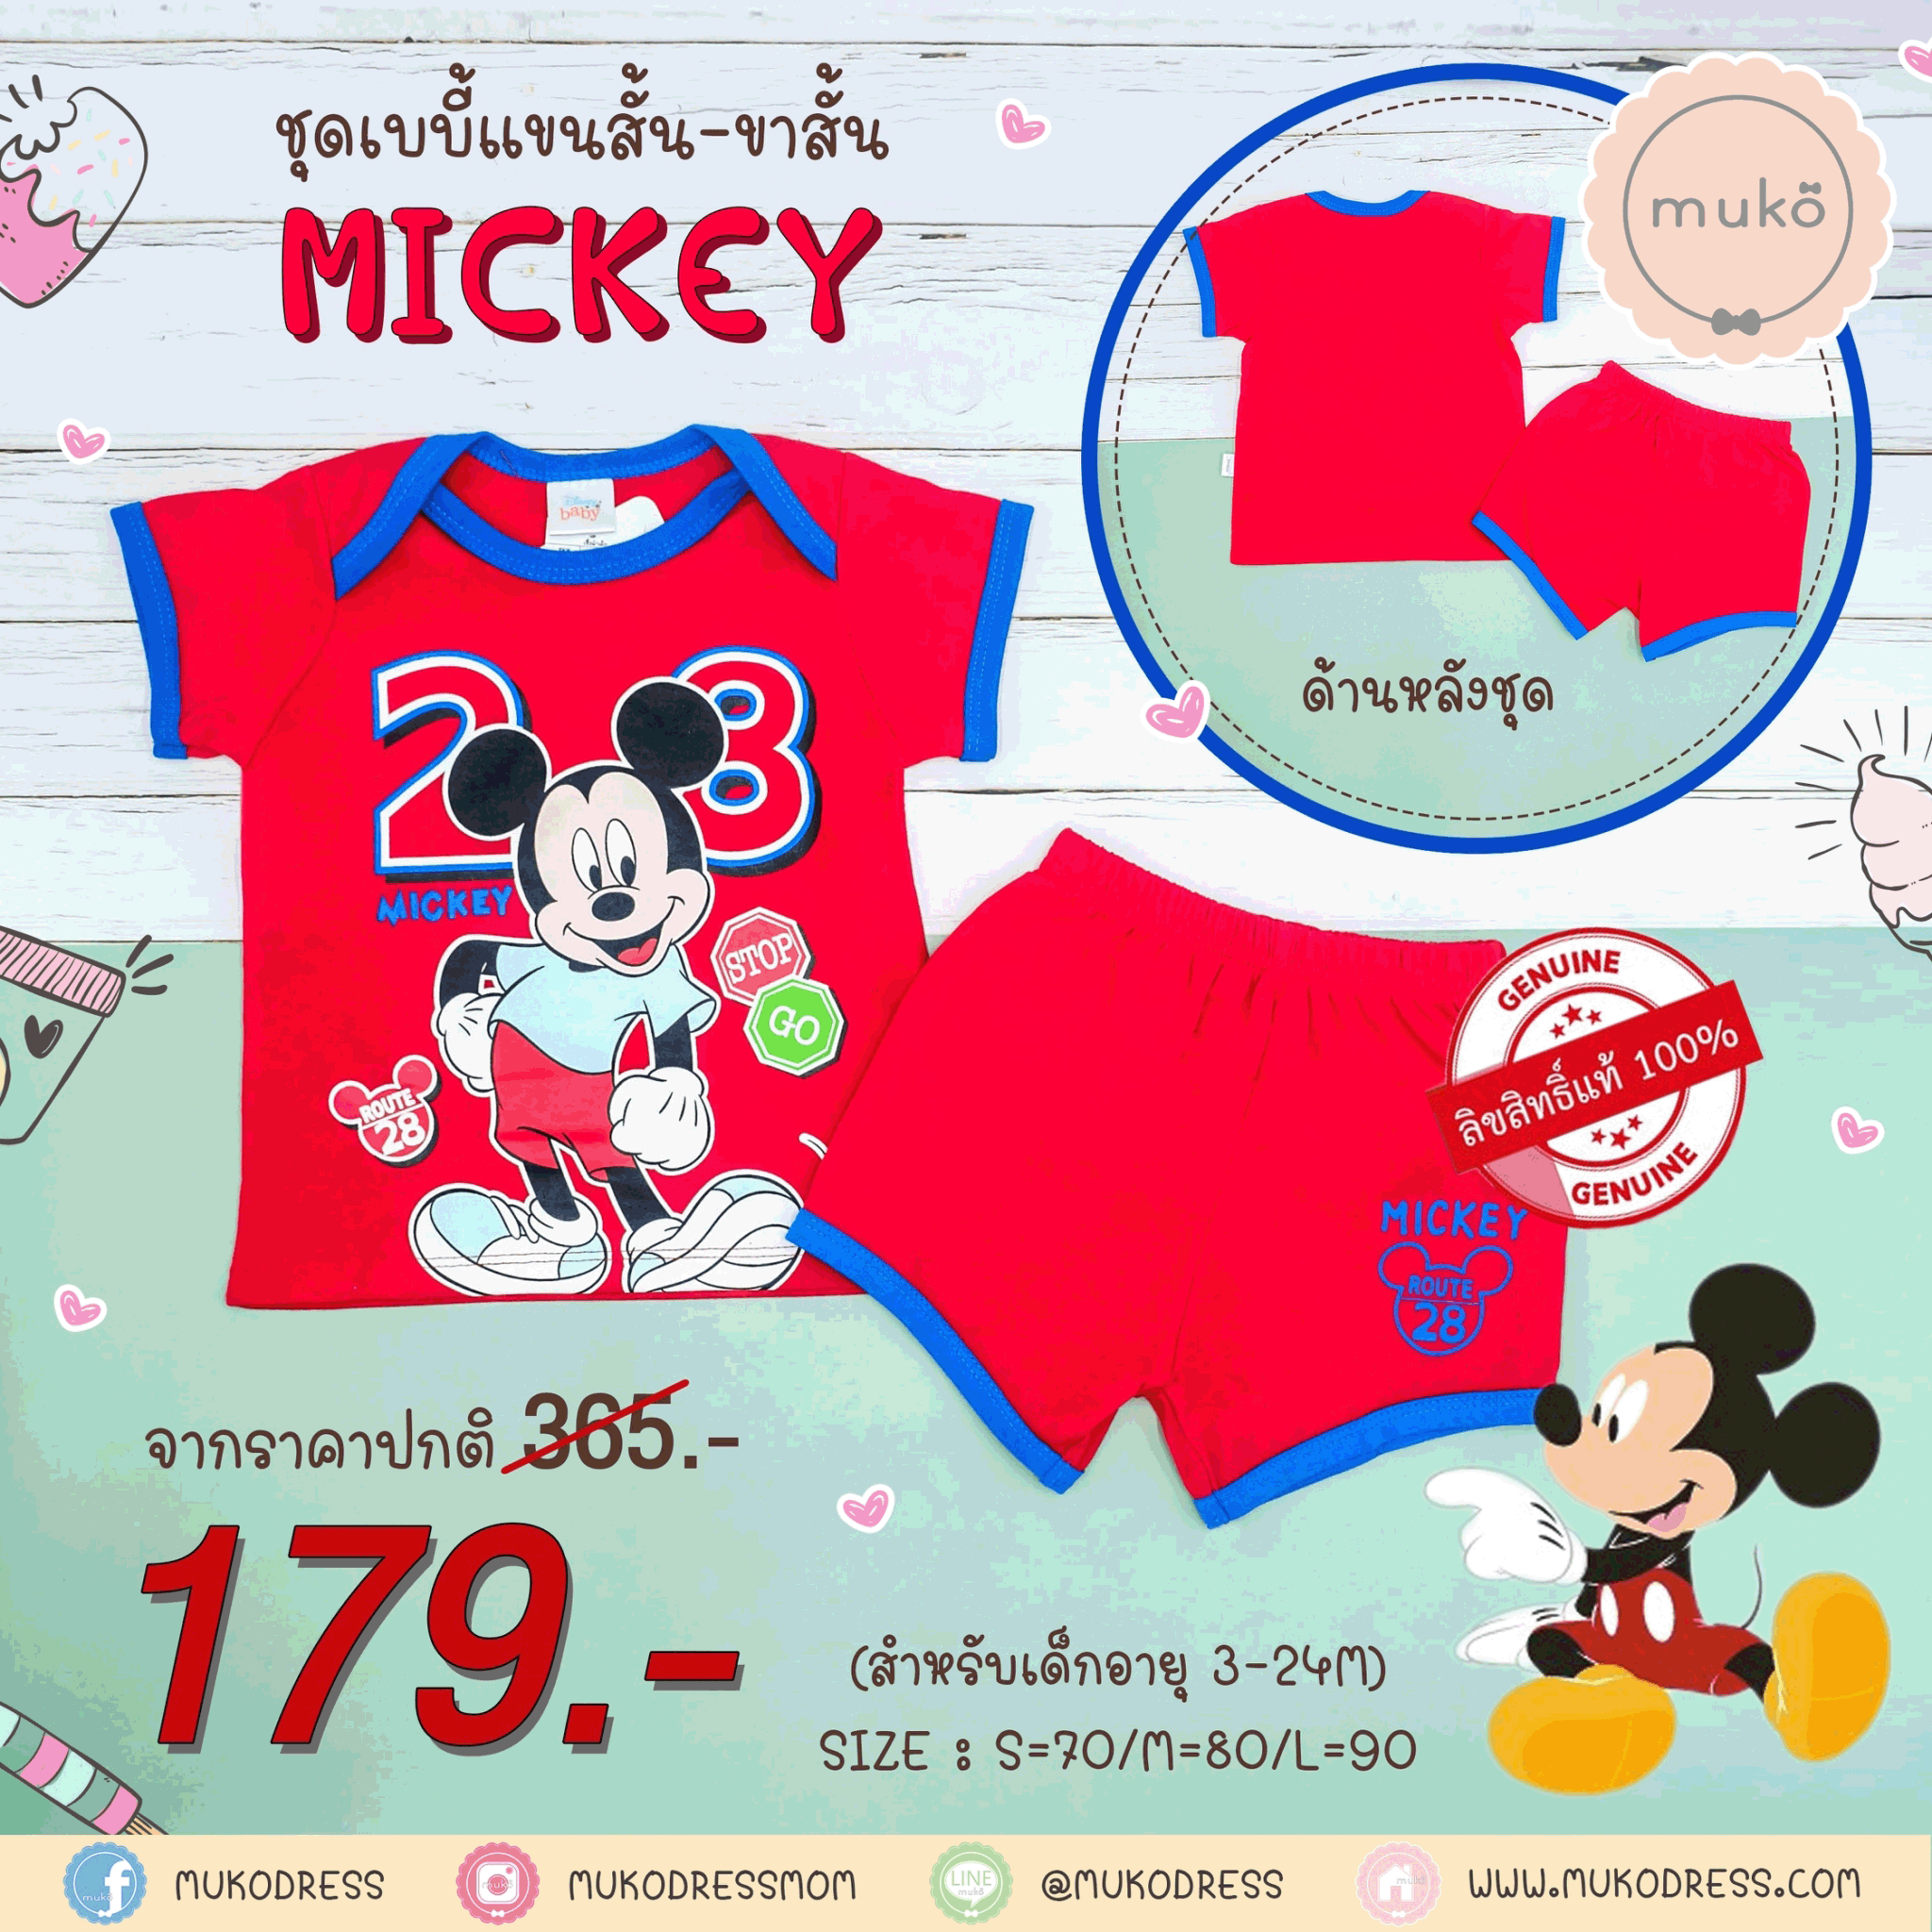 ชุดเบบี้ 3-6 เดือน แขนสั้น-ขาสั้น (S=70) DMK017-10-L-Red S ลายมิกกี้ เมาส์ Mickey Mouse